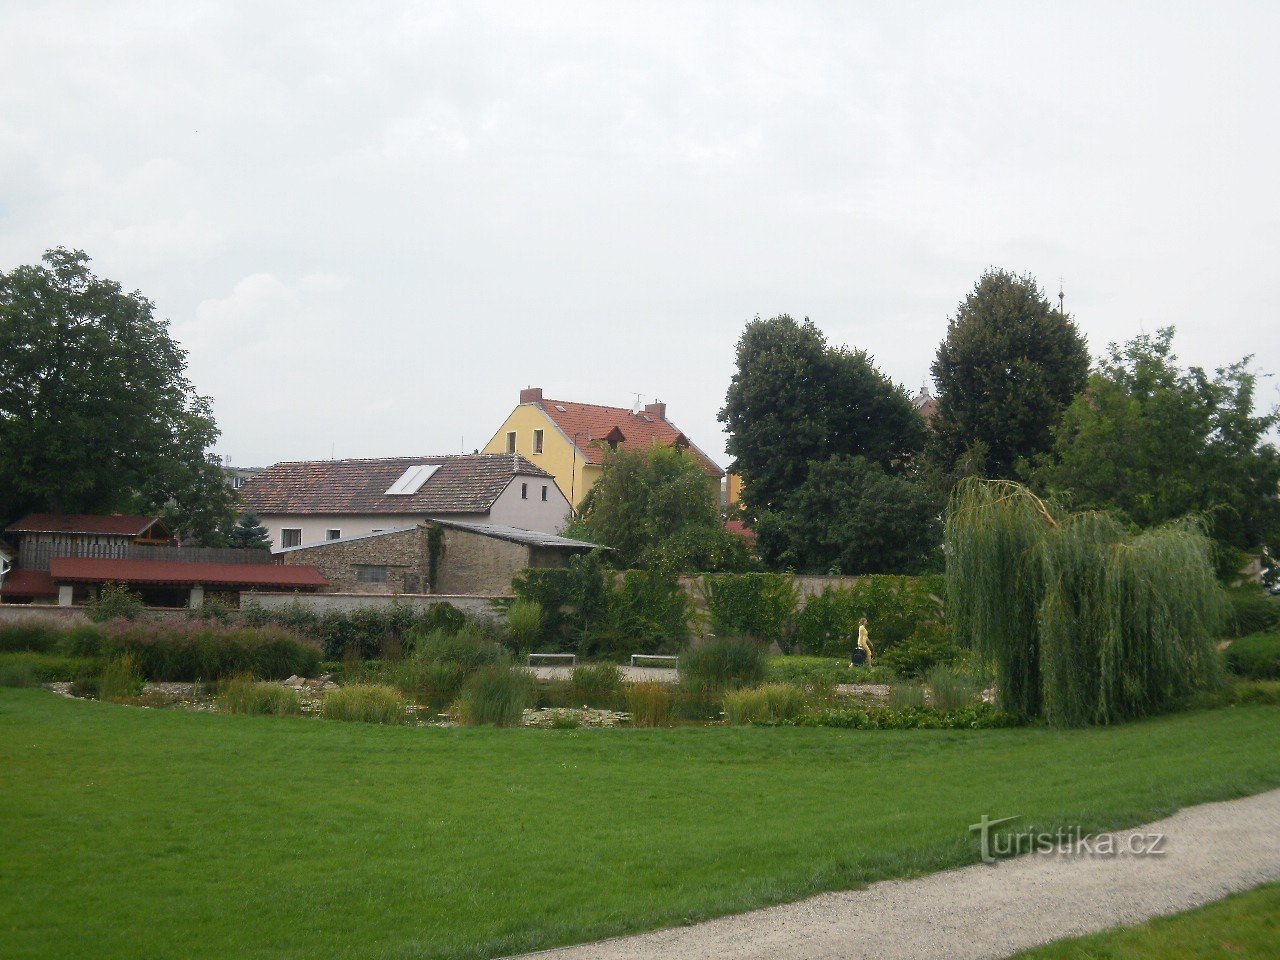 Litoměřice er en by ved sammenløbet af Elben og Ohře